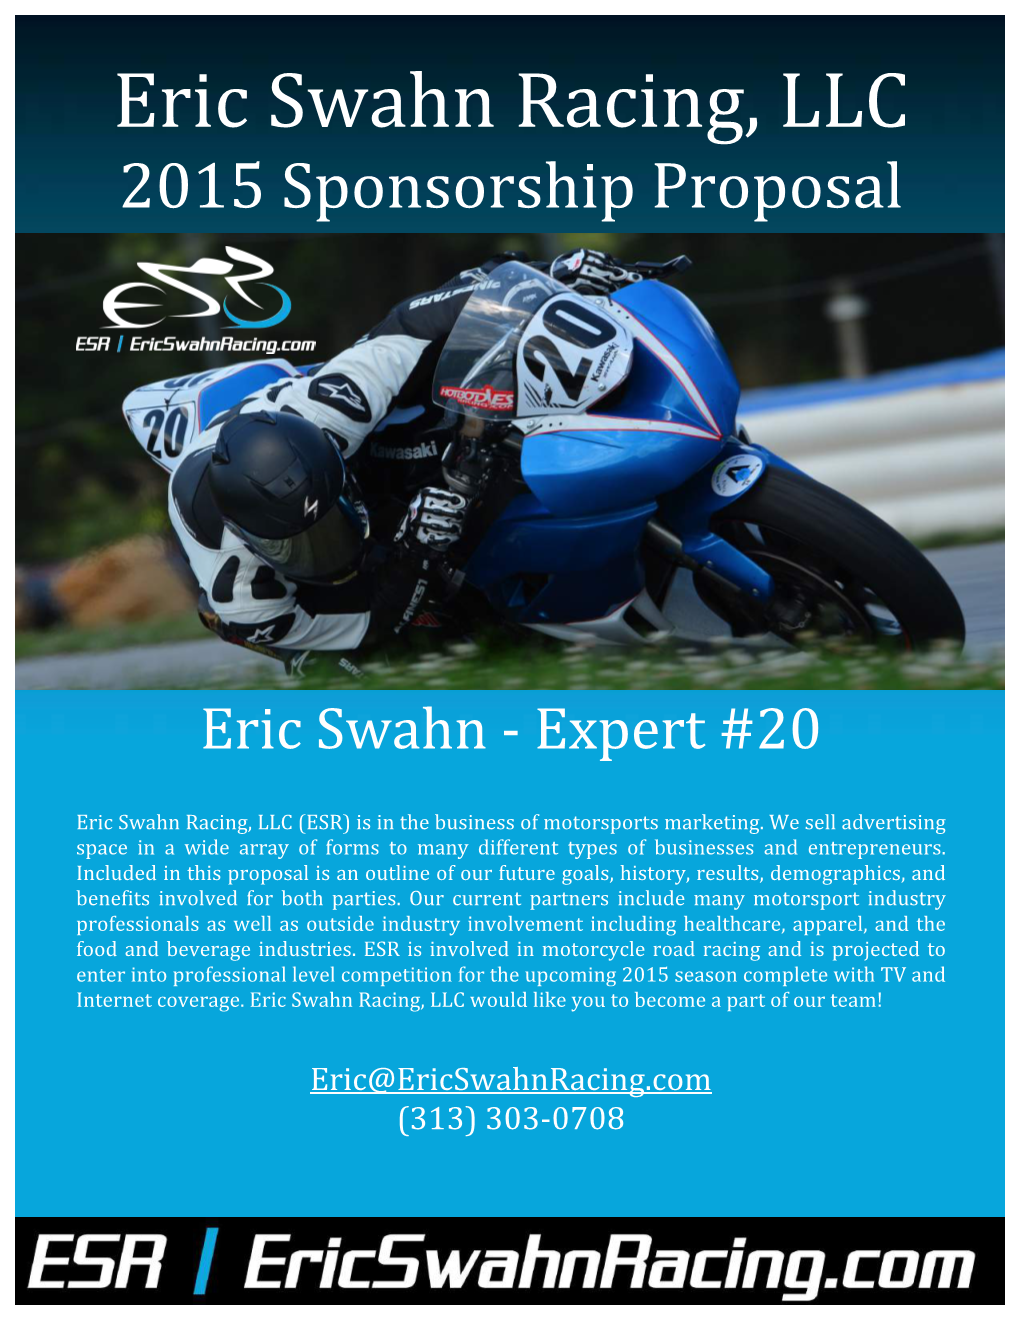 Eric Swahn Racing, LLC 2015 Sponsorship Proposal